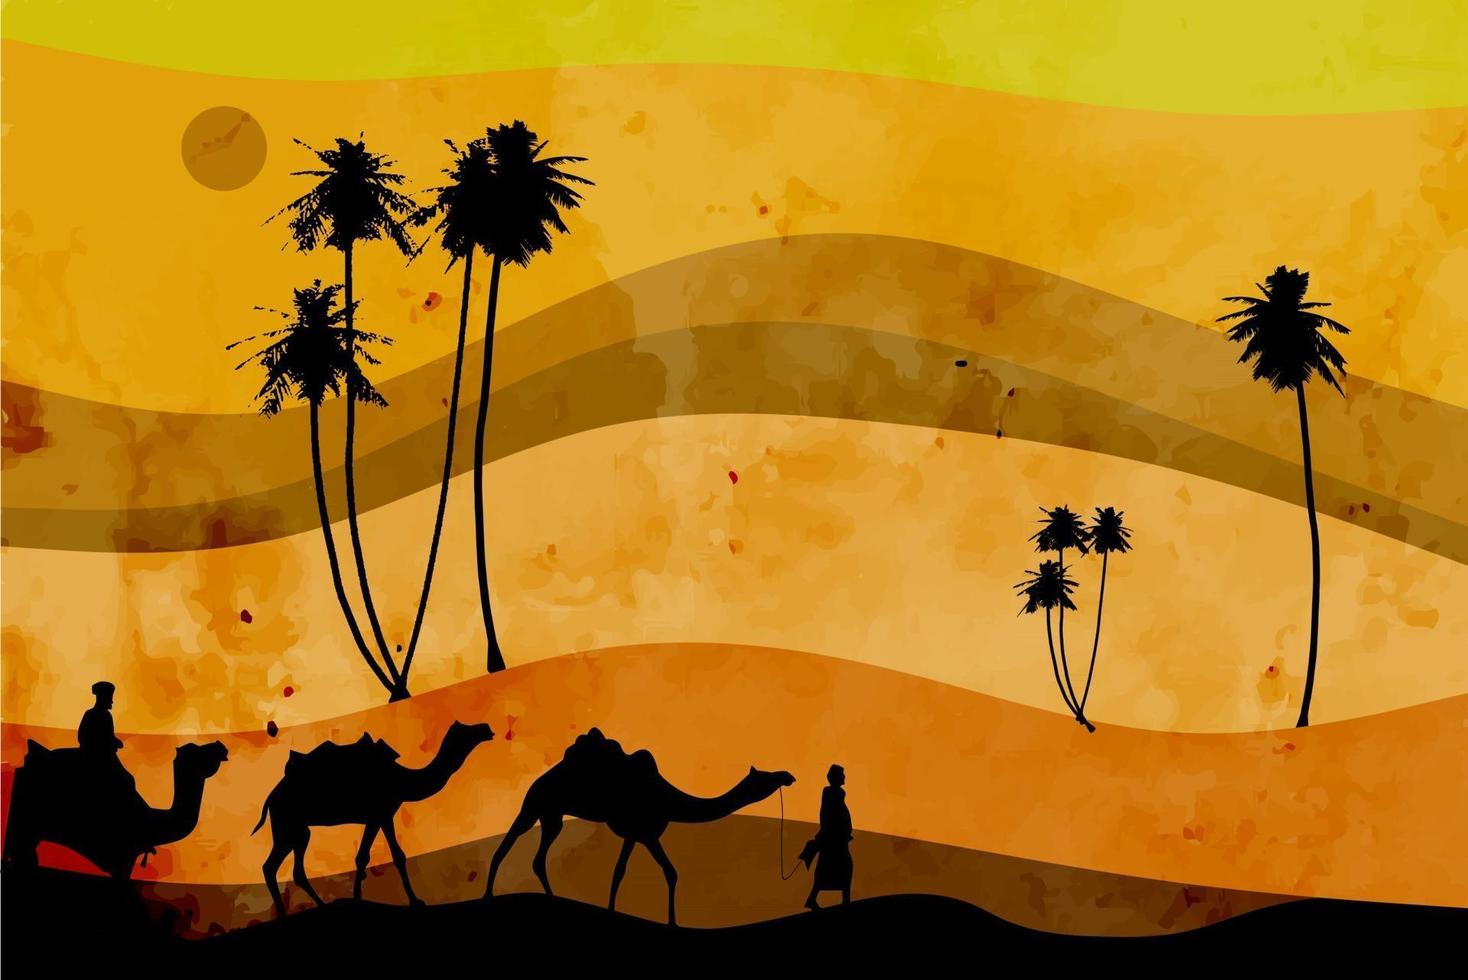 prachtig woestijnzonsondergang abstract landschap als achtergrond met Arabische passagiers die kamelen en abstracte bomen houden vector